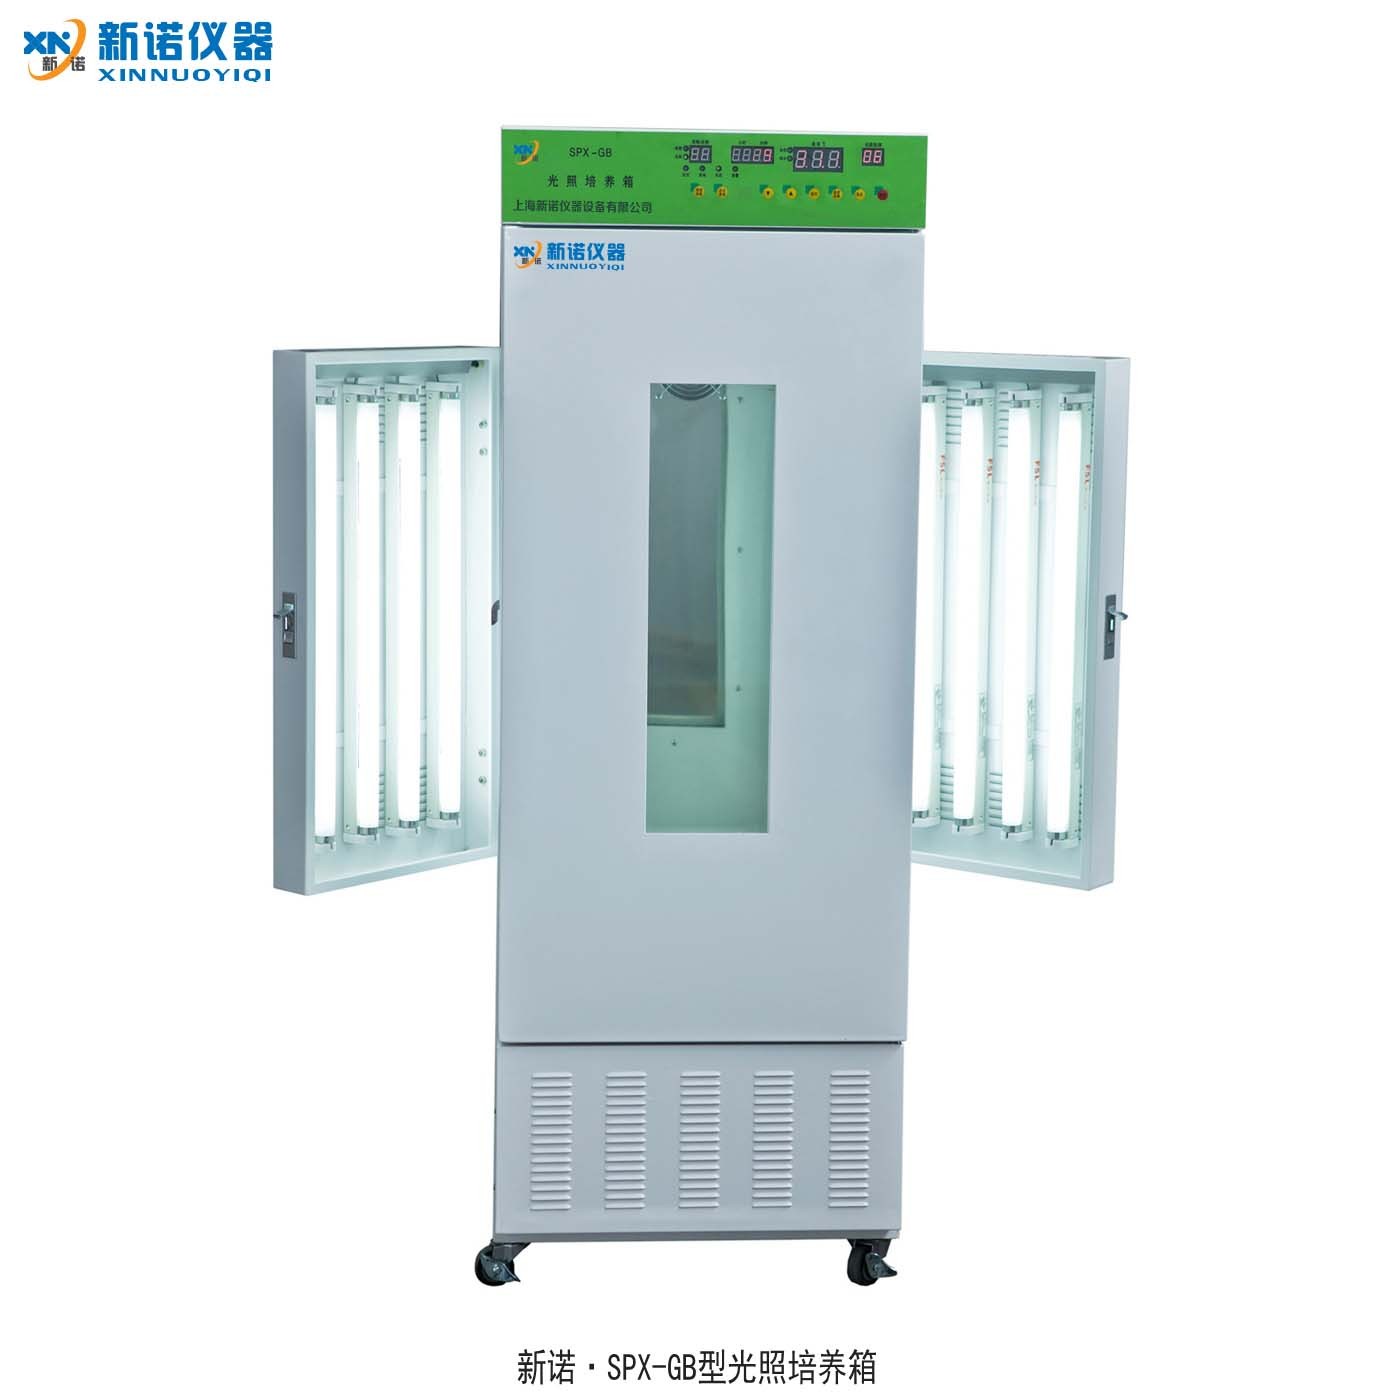 上海新诺 SPX-GB光照培养箱 快速生长箱